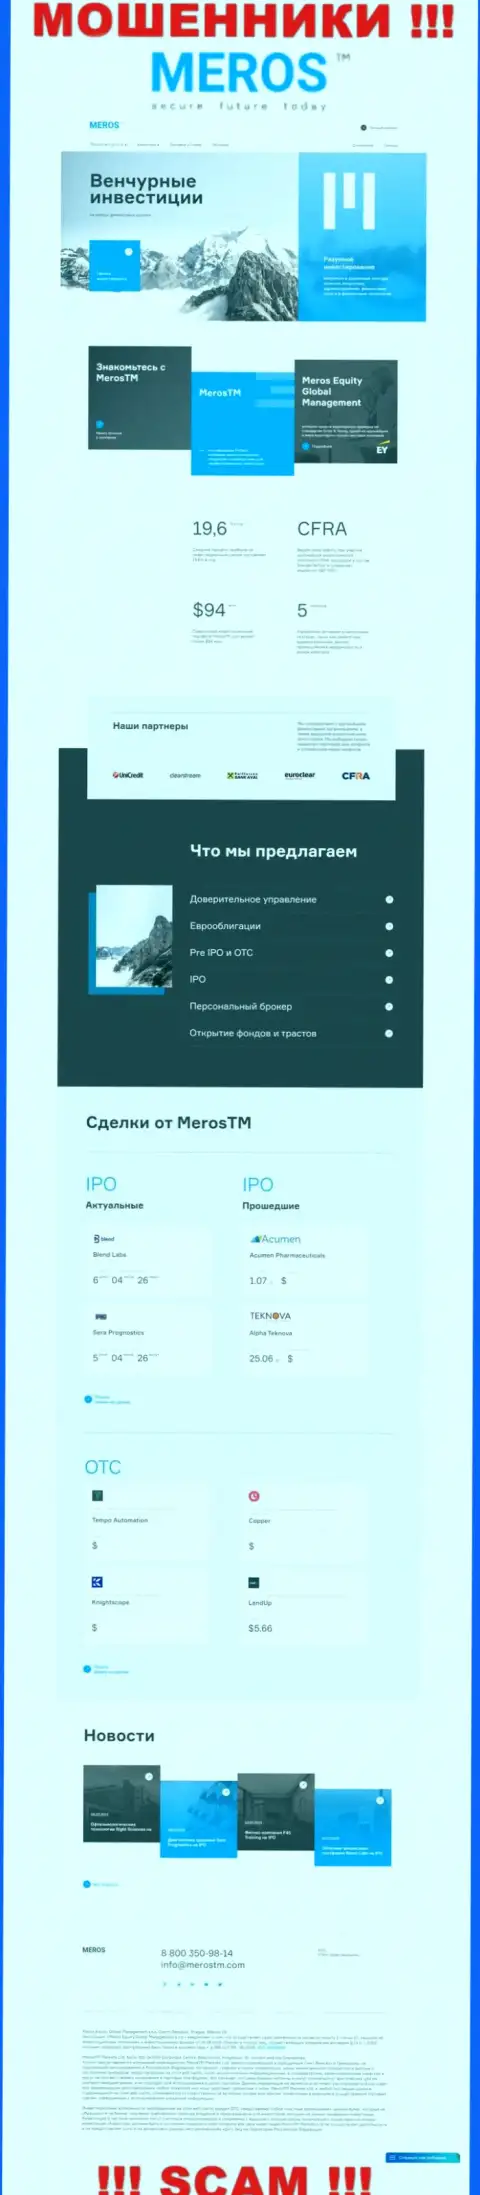 Обзор официального сайта мошенников МеросТМ Ком